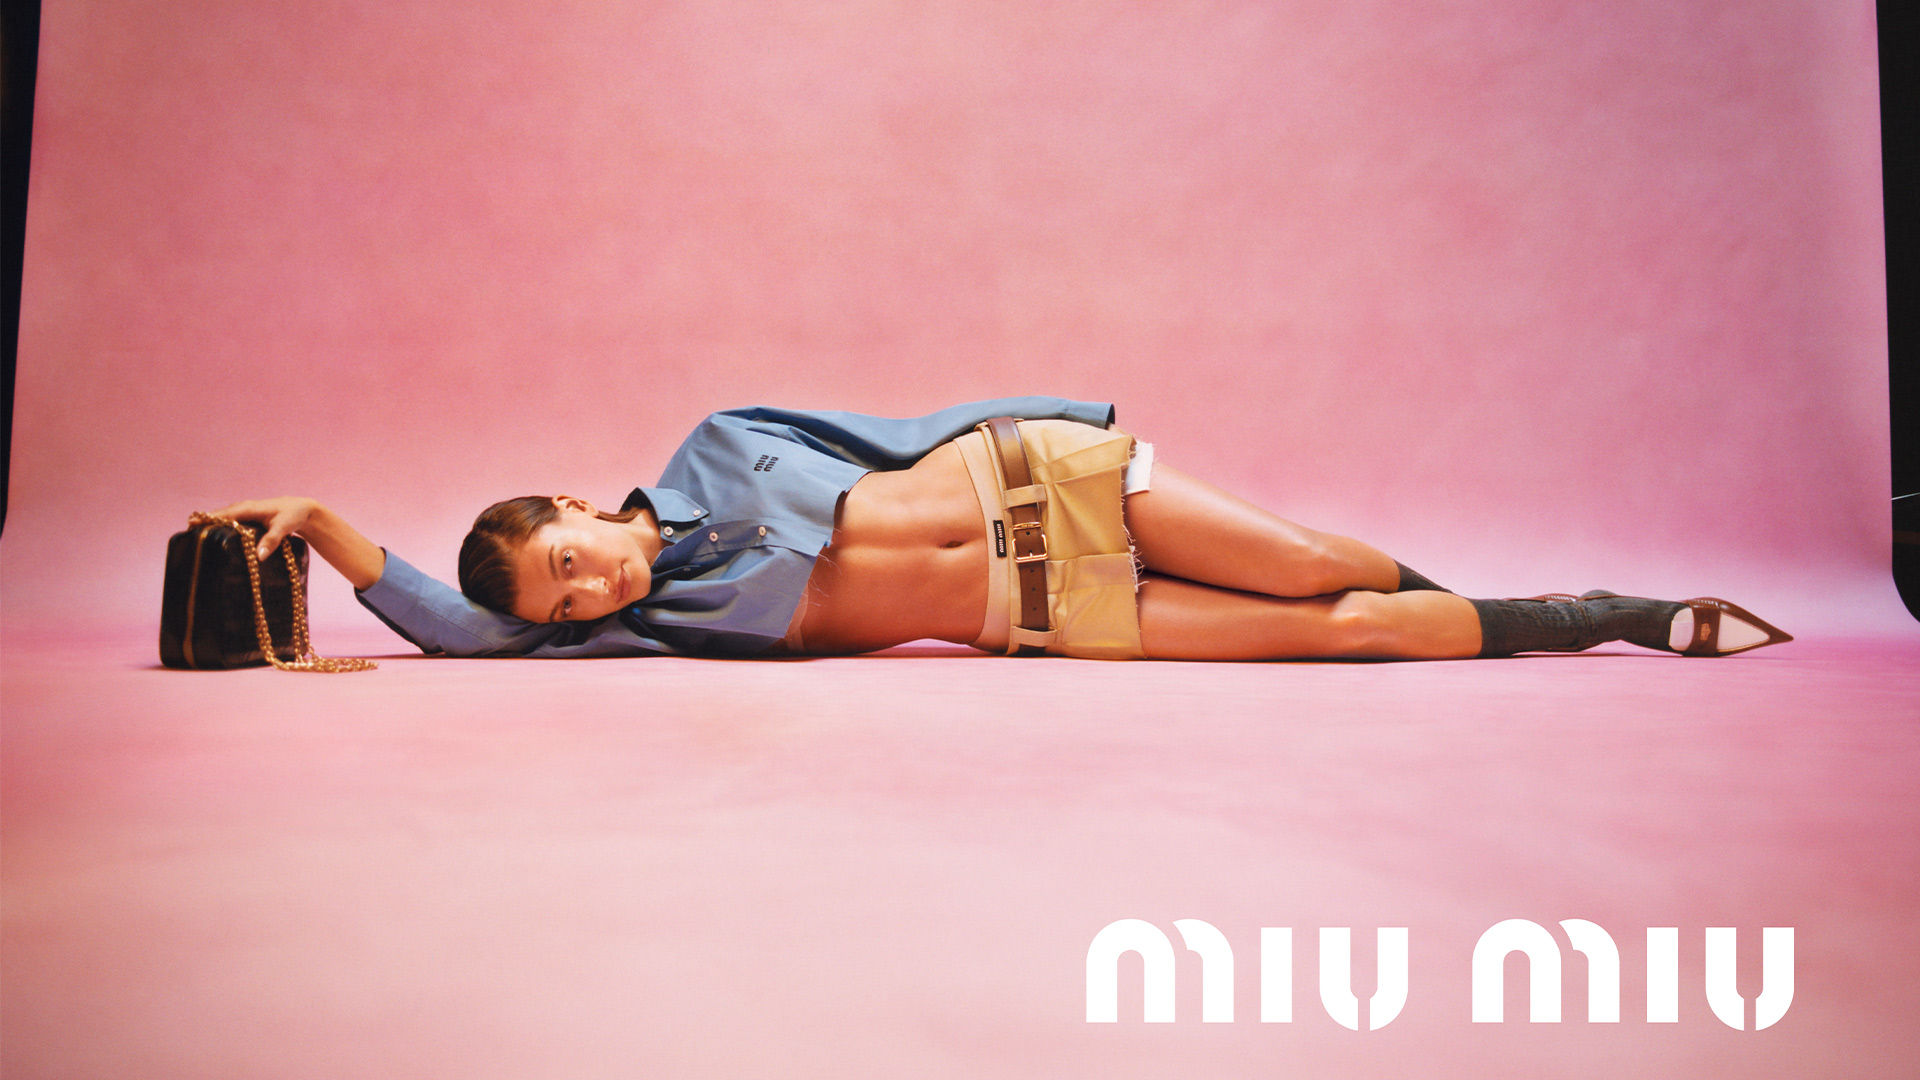 Top 5: Miu Miu, Louis Vuitton, Guess + More Recent Fashion Ads – Fashion  Gone Rogue